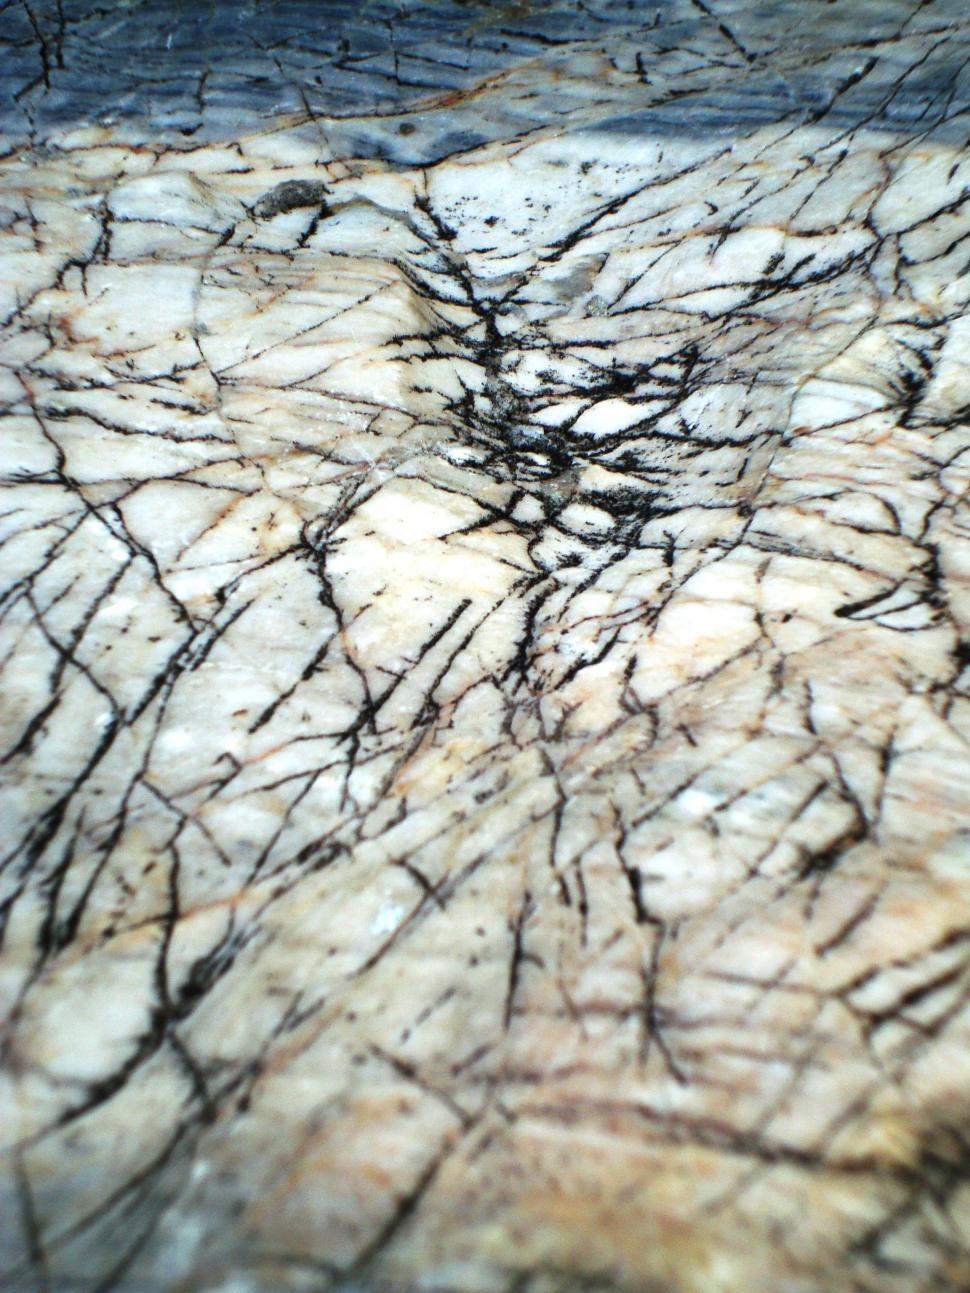 Free Image of Cracked Rock Background 